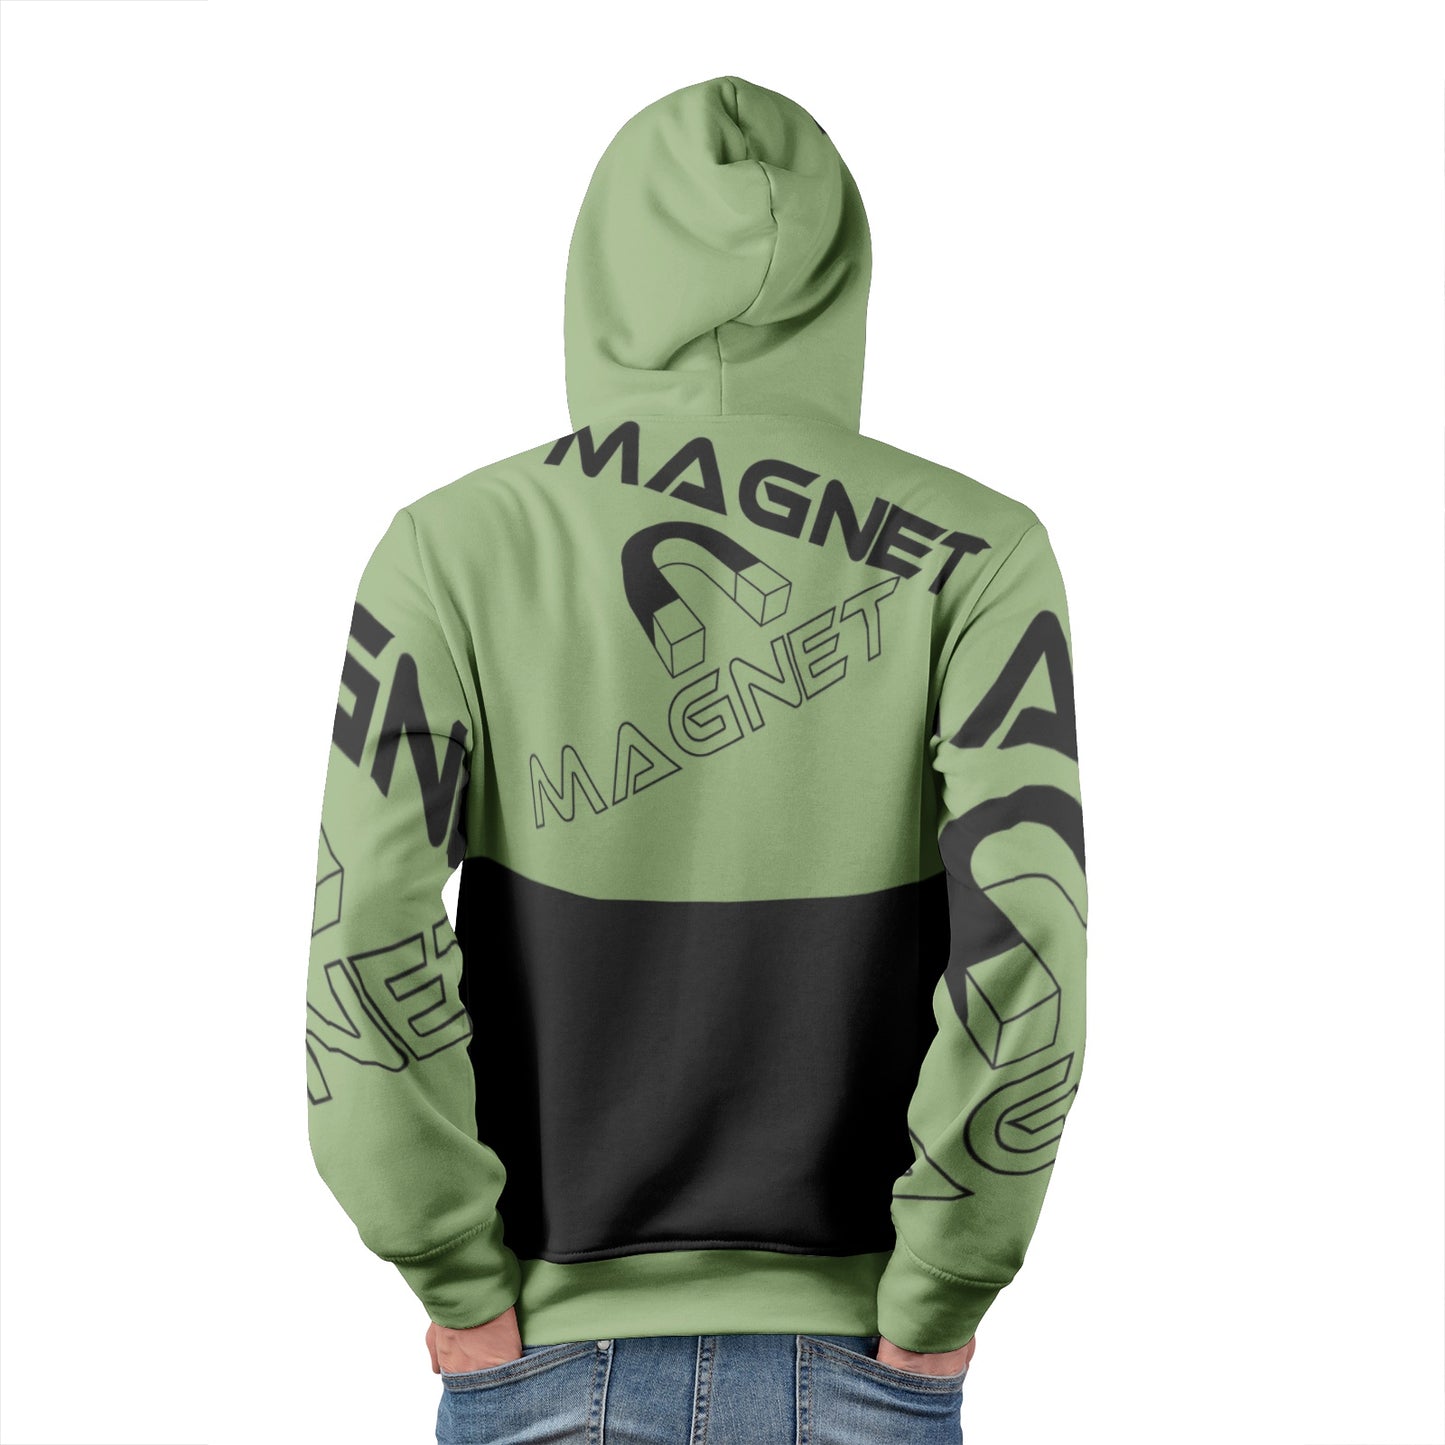 Magnet Graphix Men's Pullover Hoodies